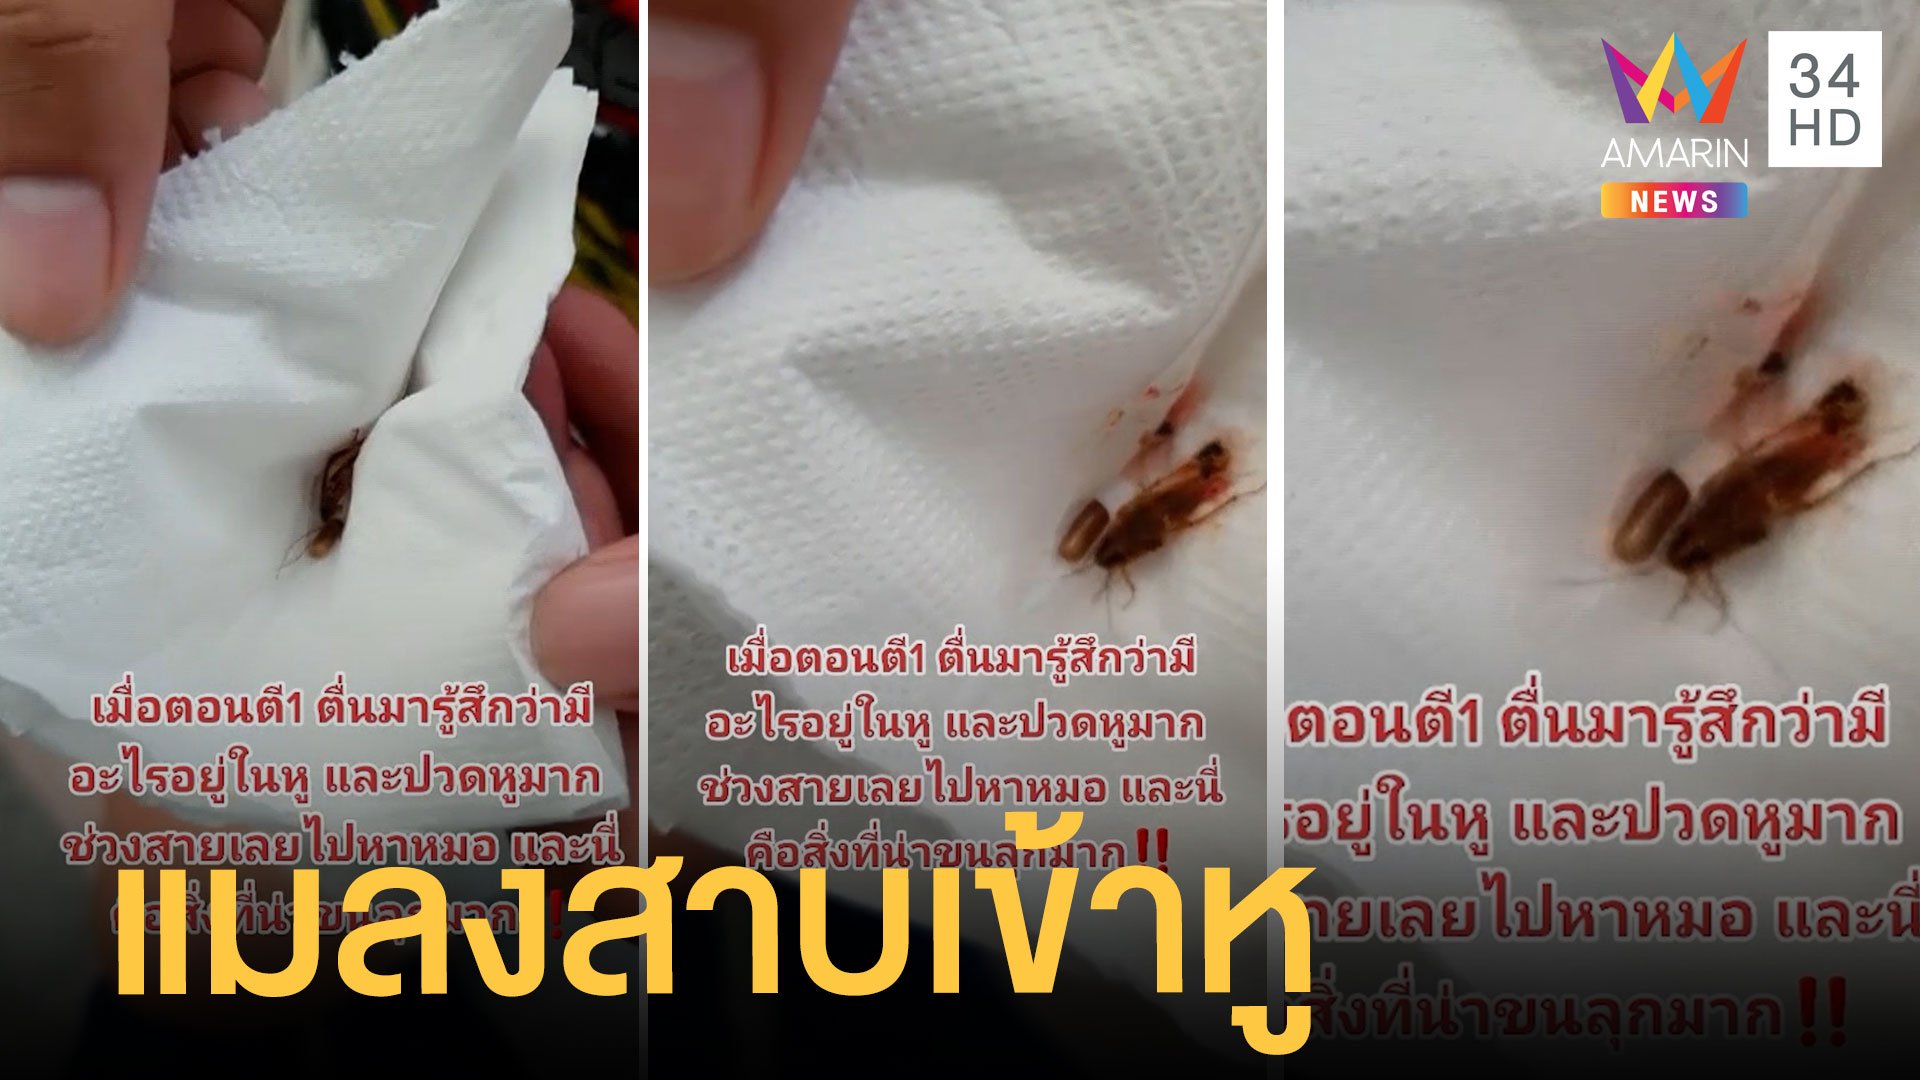 คันหูไม่รู้เป็นอะไร ไปหาหมอถึงกับอึ้ง แมลงสาบตัวใหญ่อยู่ในหู | ข่าวอรุณอมรินทร์ | 31 ส.ค. 64 | AMARIN TVHD34